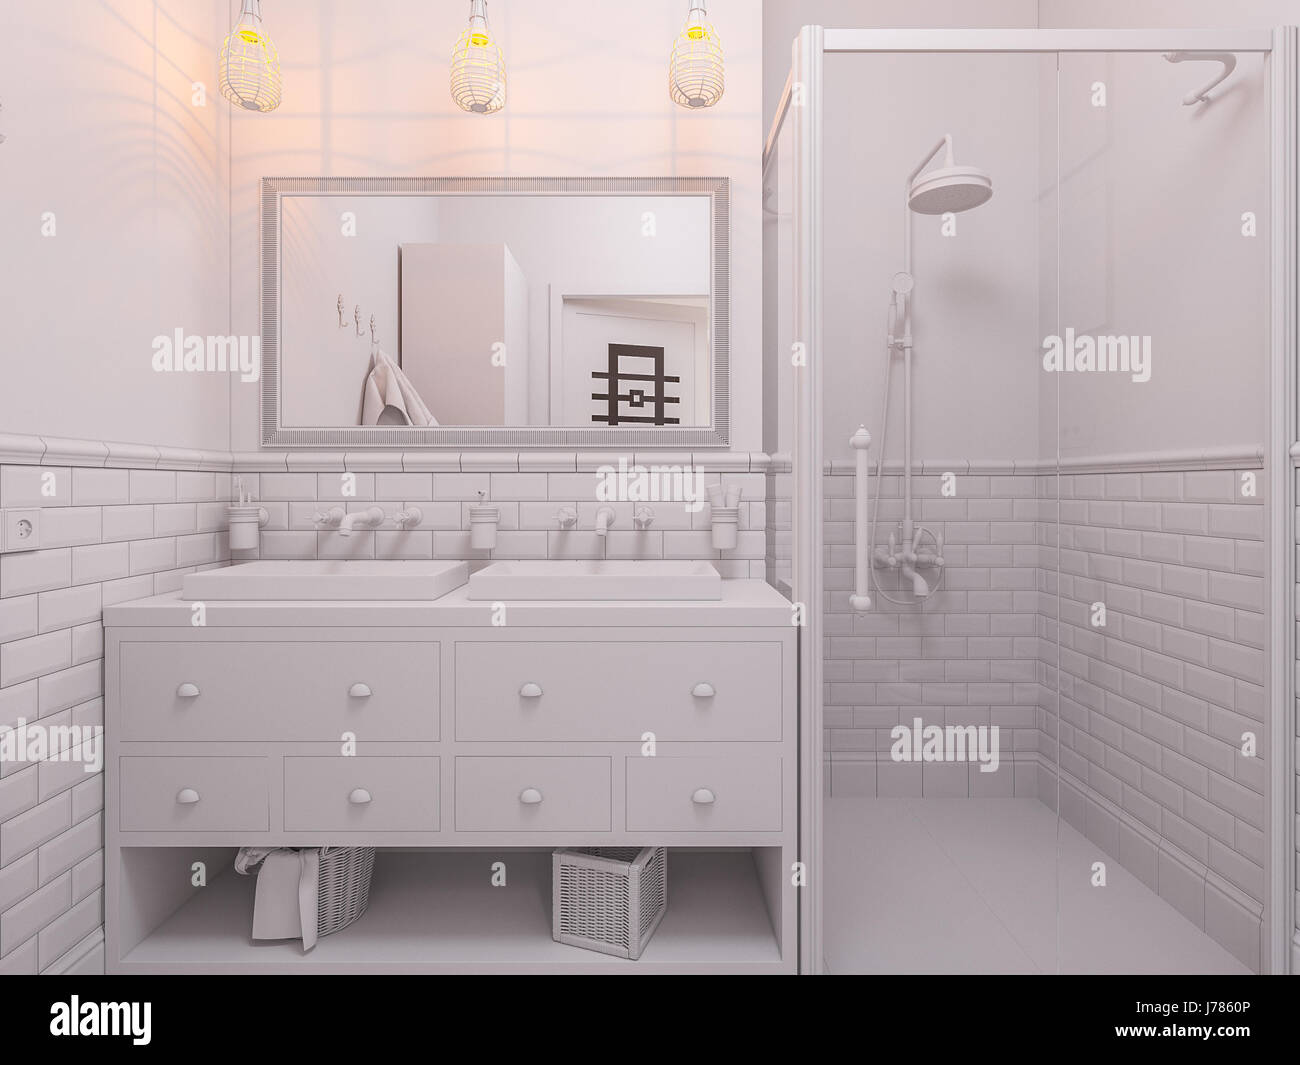 3d Illustration Of A Design Bathroom Interior In Classic